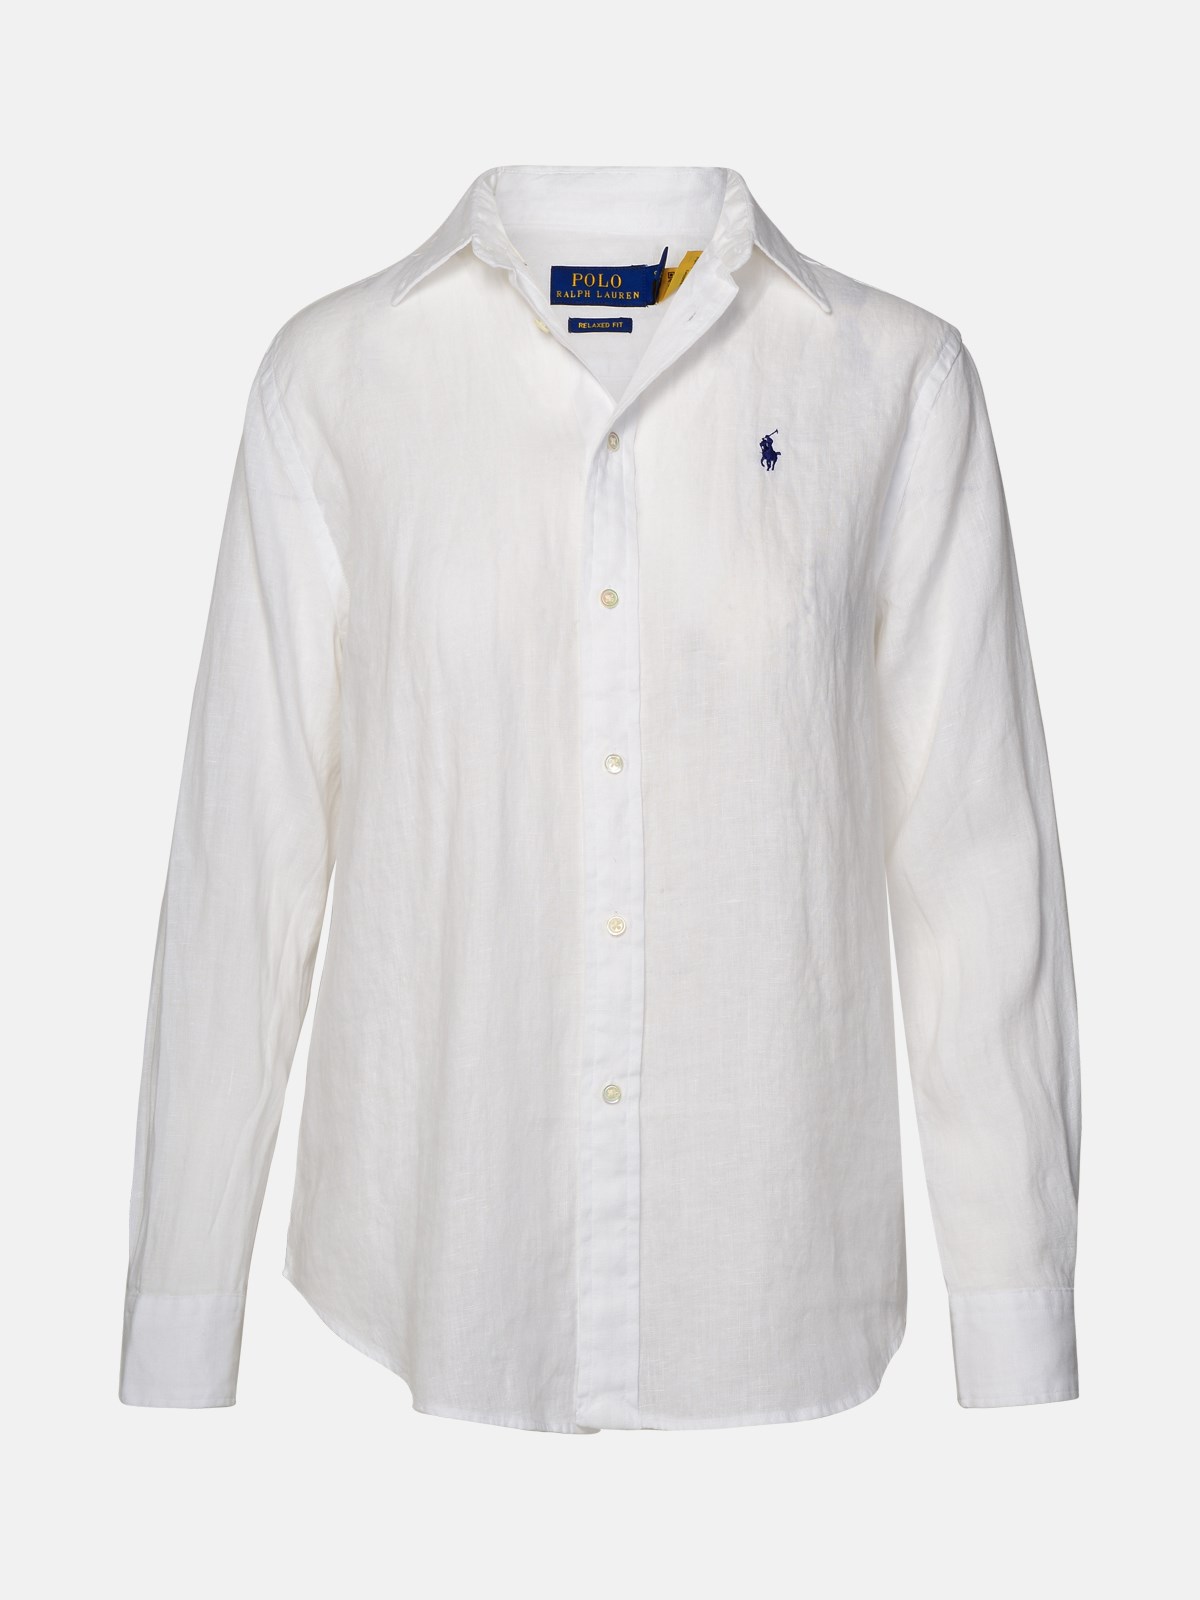 Polo Ralph Lauren Kids' White Linen Shirt